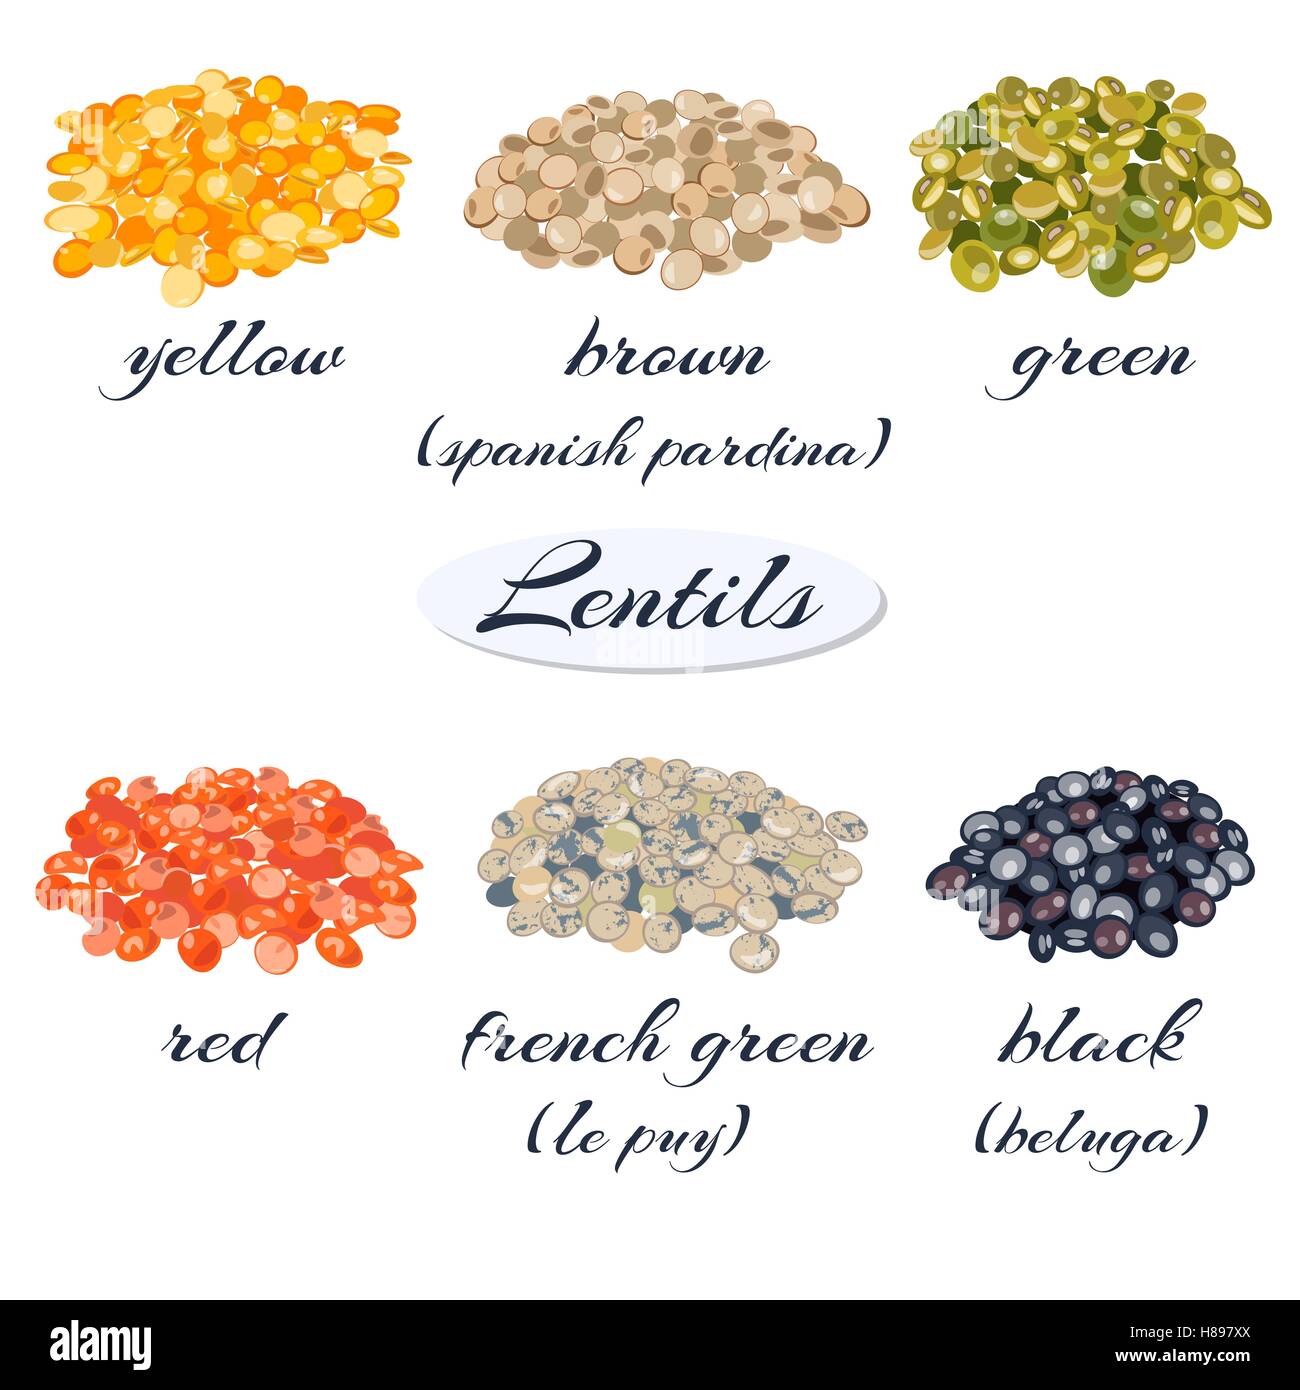 Différents types de lentilles. Jaune, brun, vert, rouge, vert, noir  français de lentilles. Vector illustration Image Vectorielle Stock - Alamy